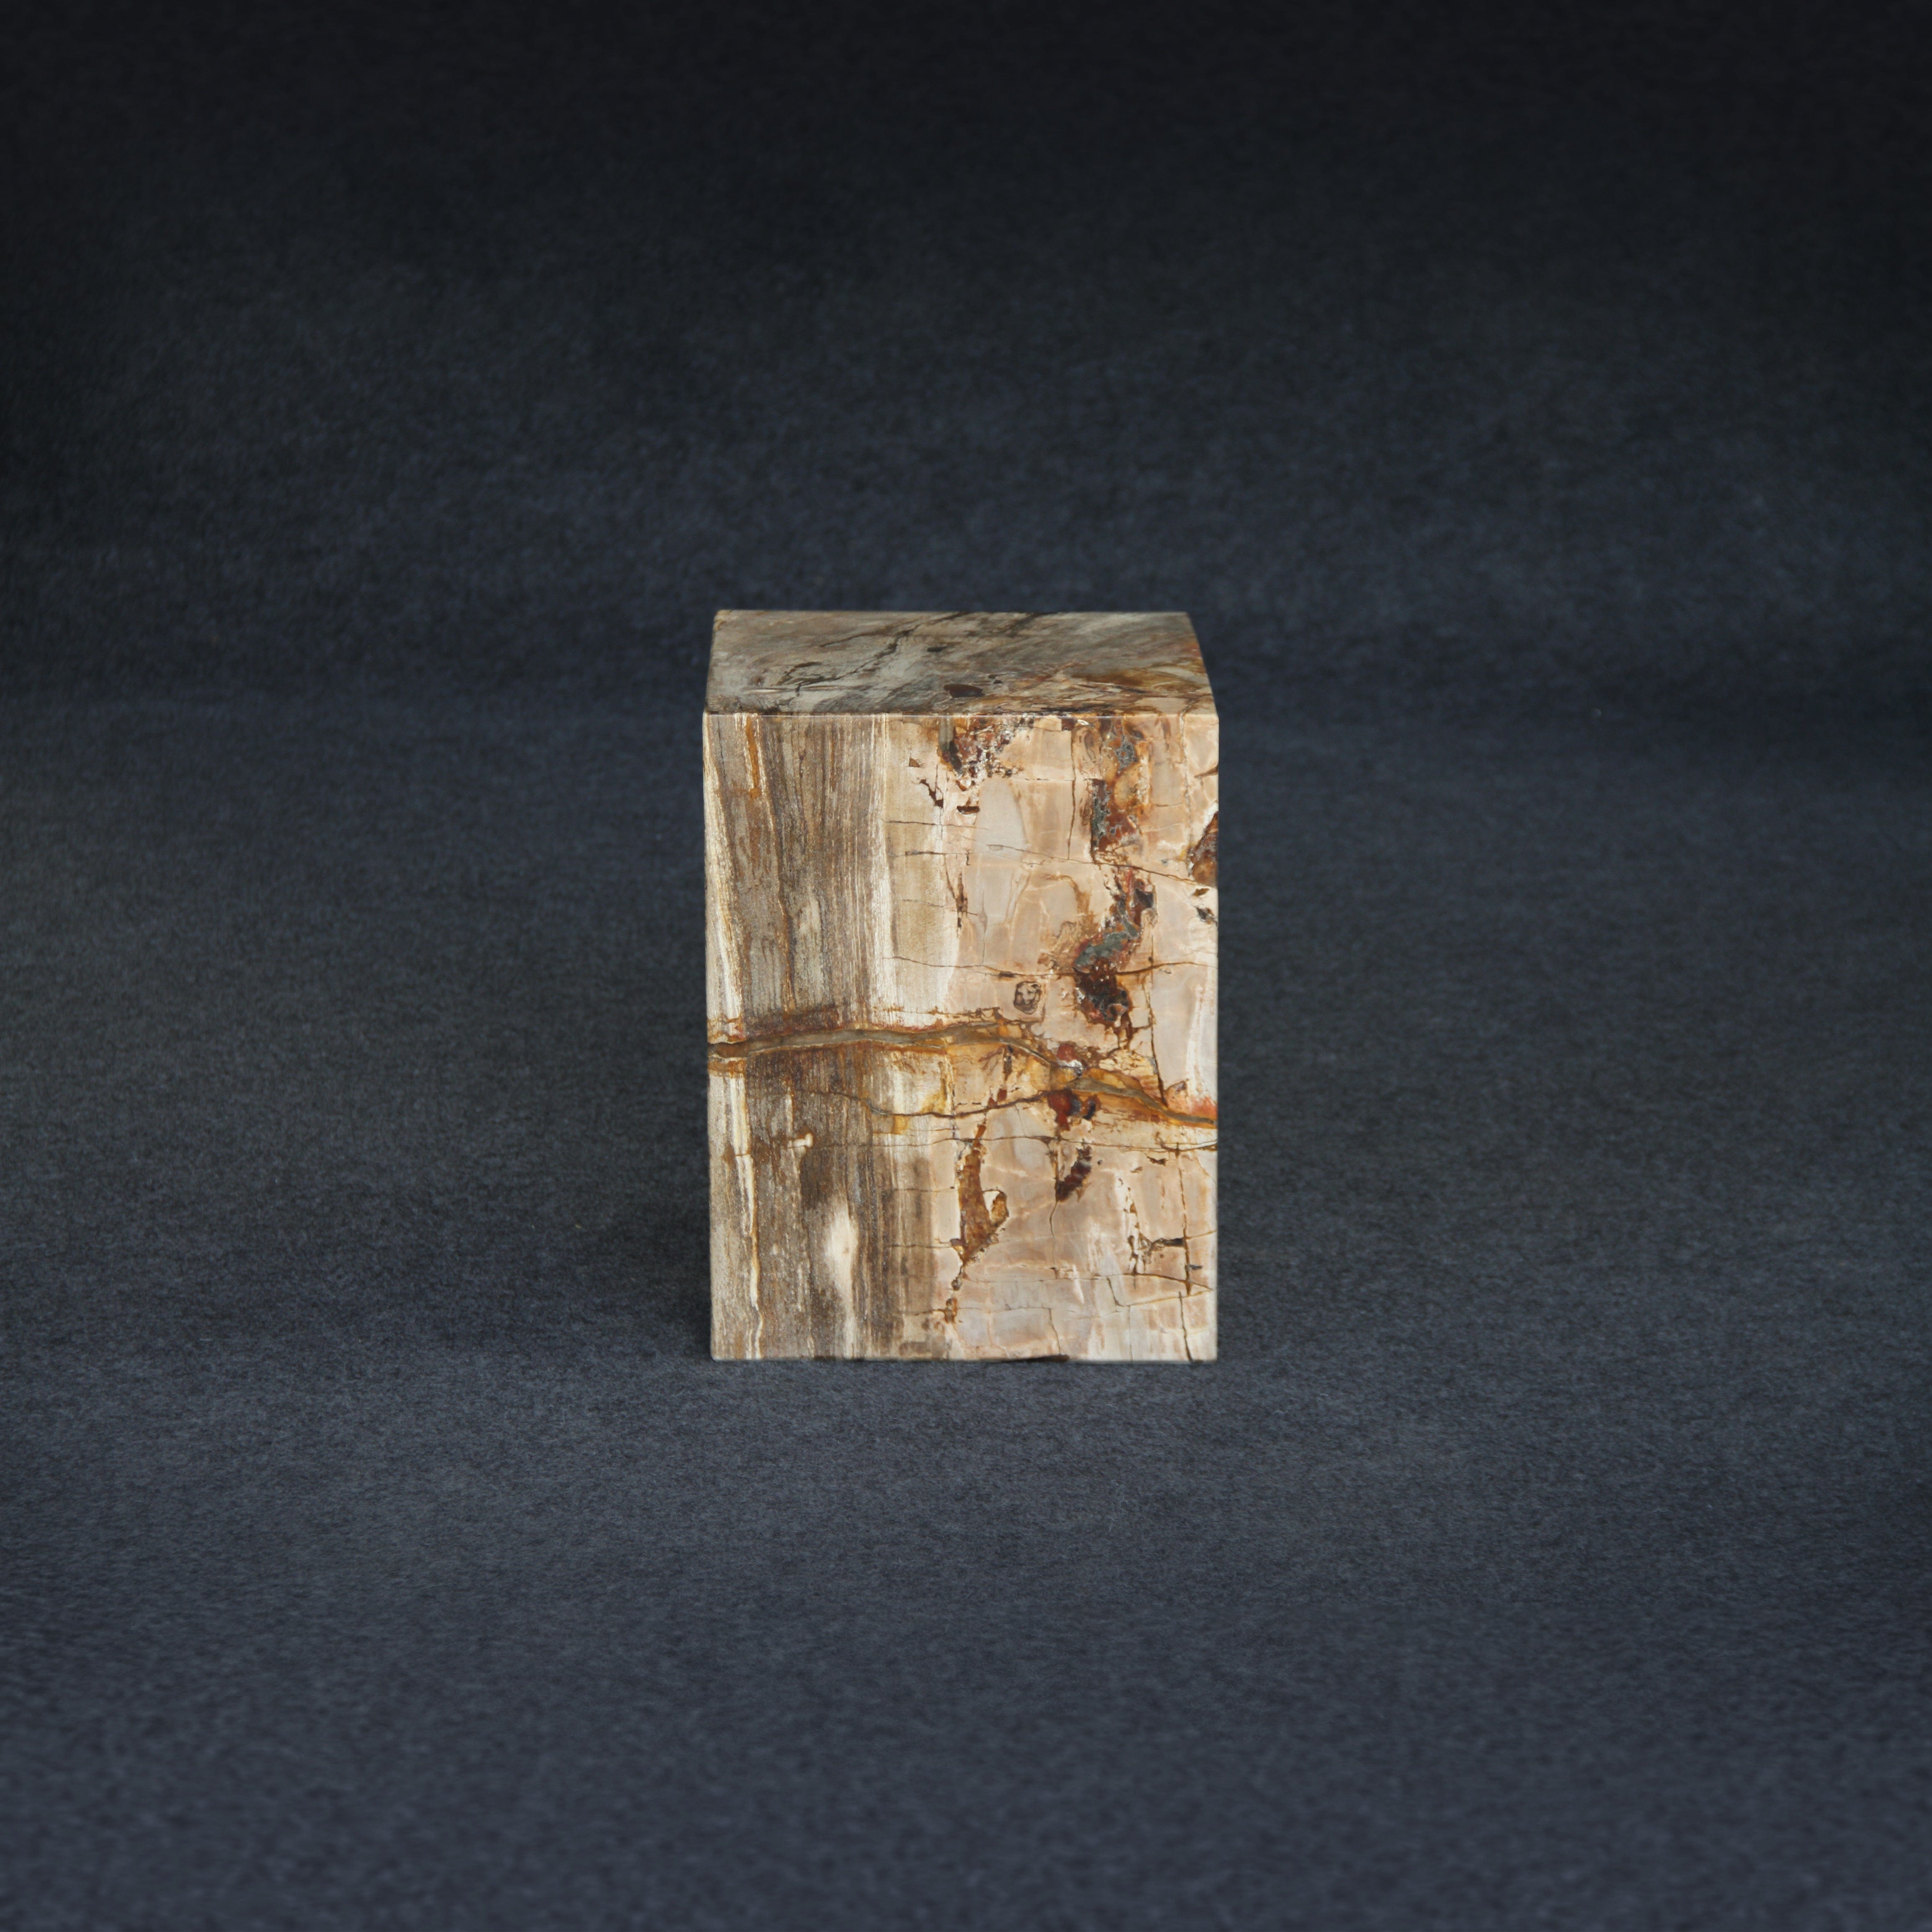 Kalifano Petrified Wood Petrified Wood Square Stump / Stool 16" / 201 lbs PWSS6200.003